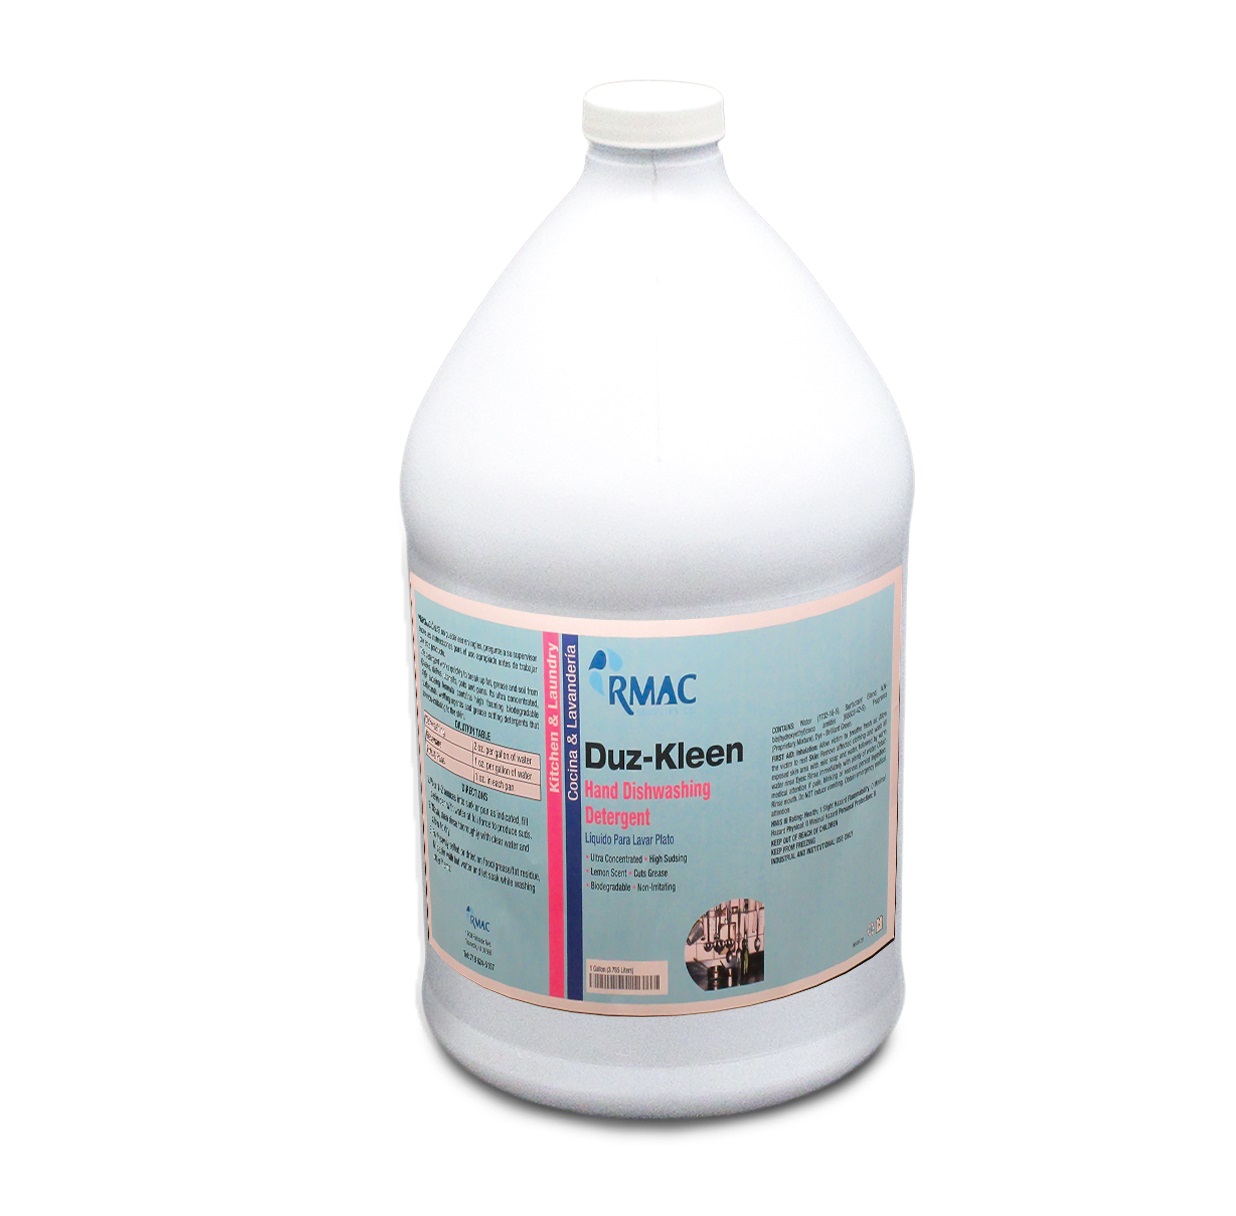 Duz-Kleen Hand Dishwashing Detergent 1gal (4/cs)